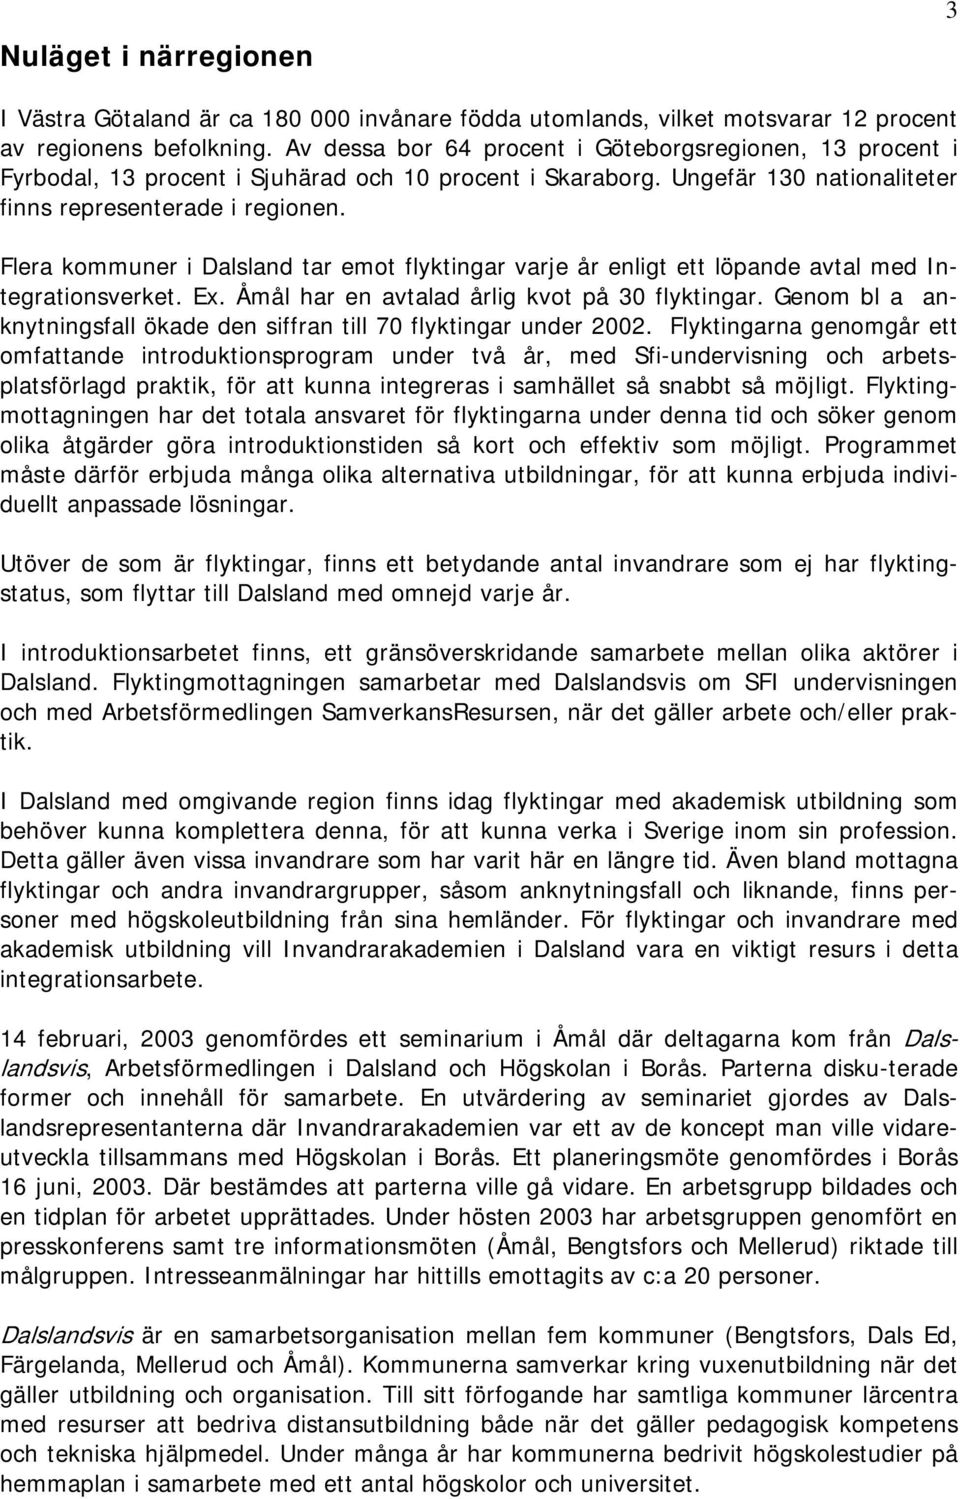 Flera kommuner i Dalsland tar emot flyktingar varje år enligt ett löpande avtal med Integrationsverket. Ex. Åmål har en avtalad årlig kvot på 30 flyktingar.